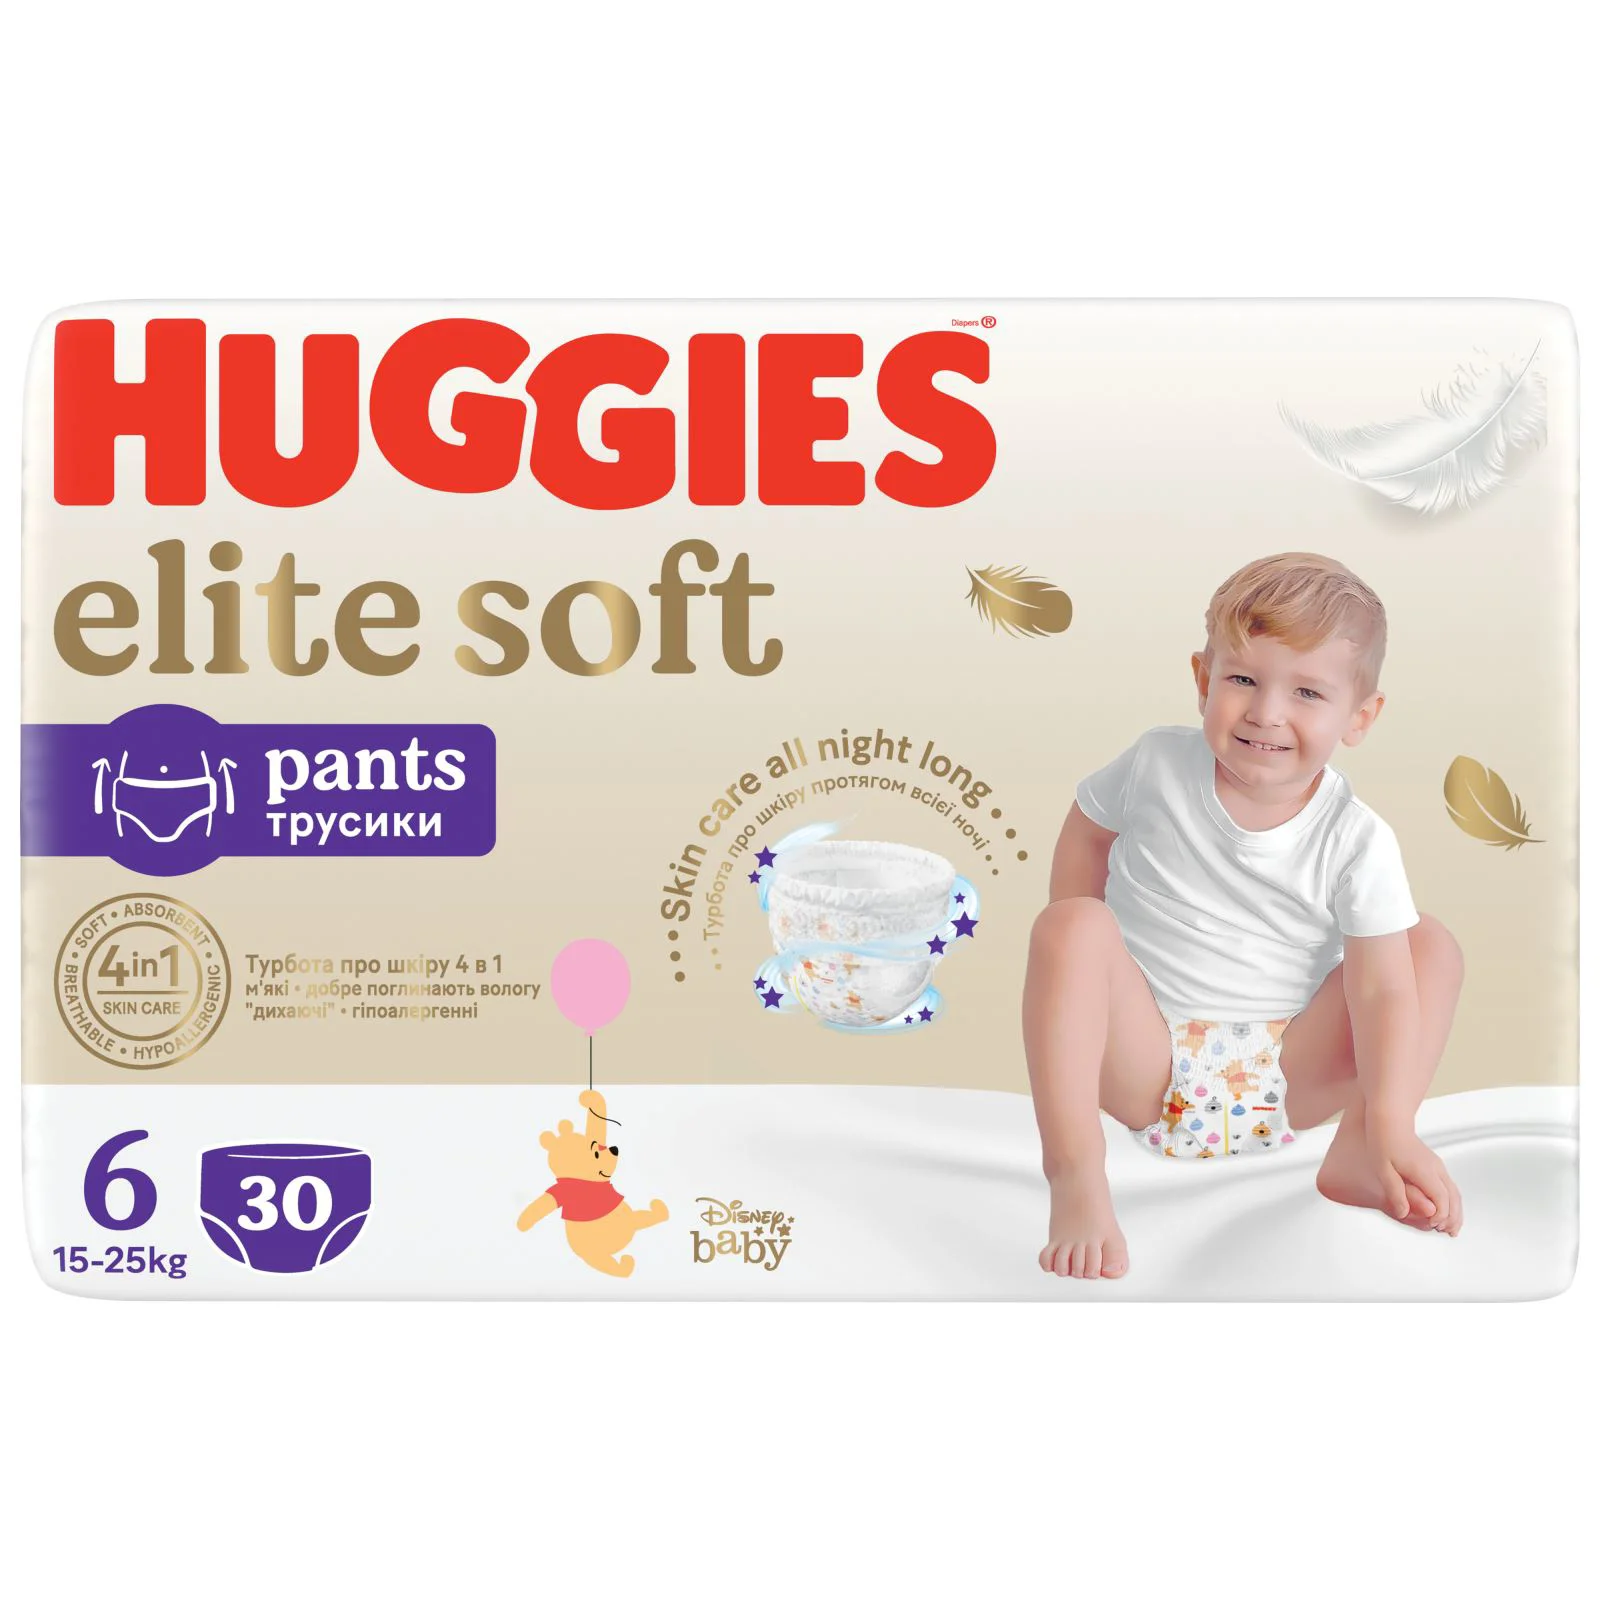 Трусики Huggies Elite Soft Mega 6 (15-25 кг), 30 шт.